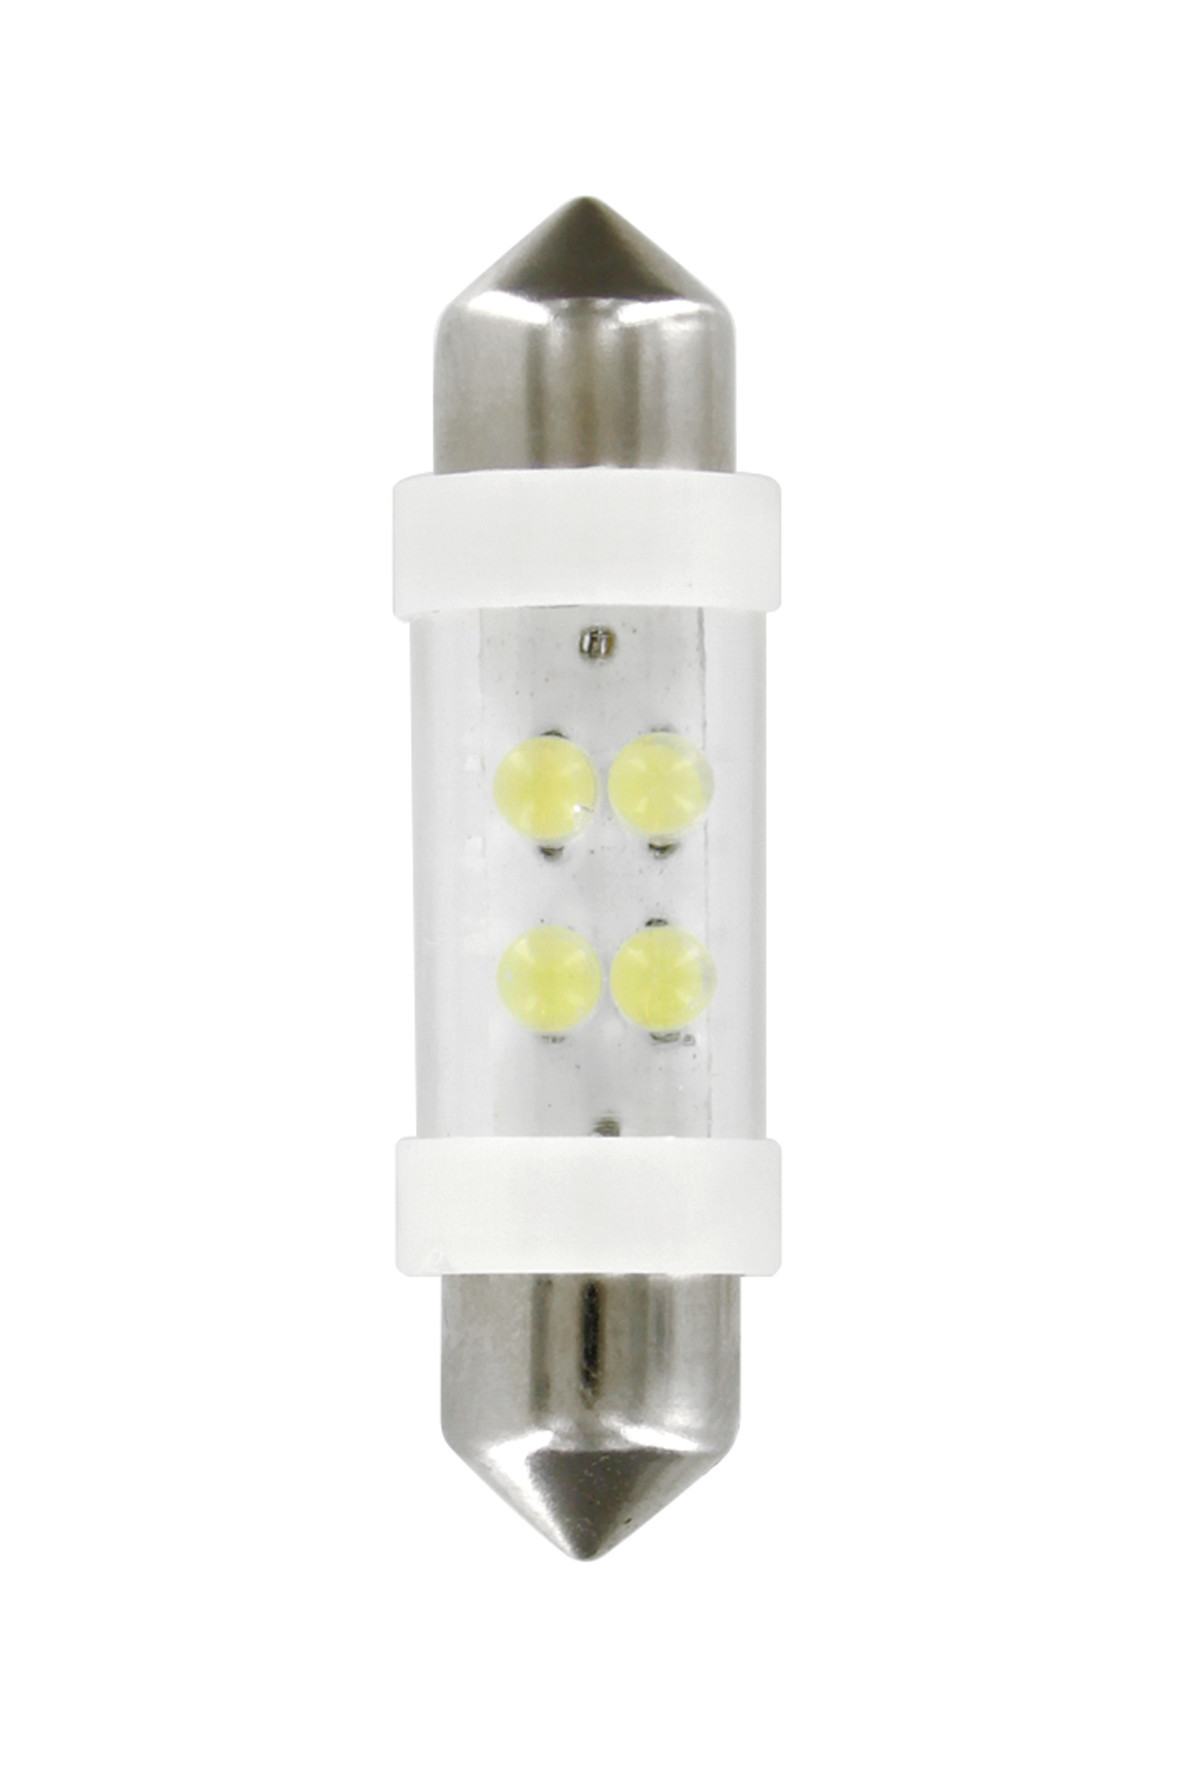 24V Festoon lamp 4 Led - 11x38 mm - SV8,5-8 - 2 pcs - White thumb